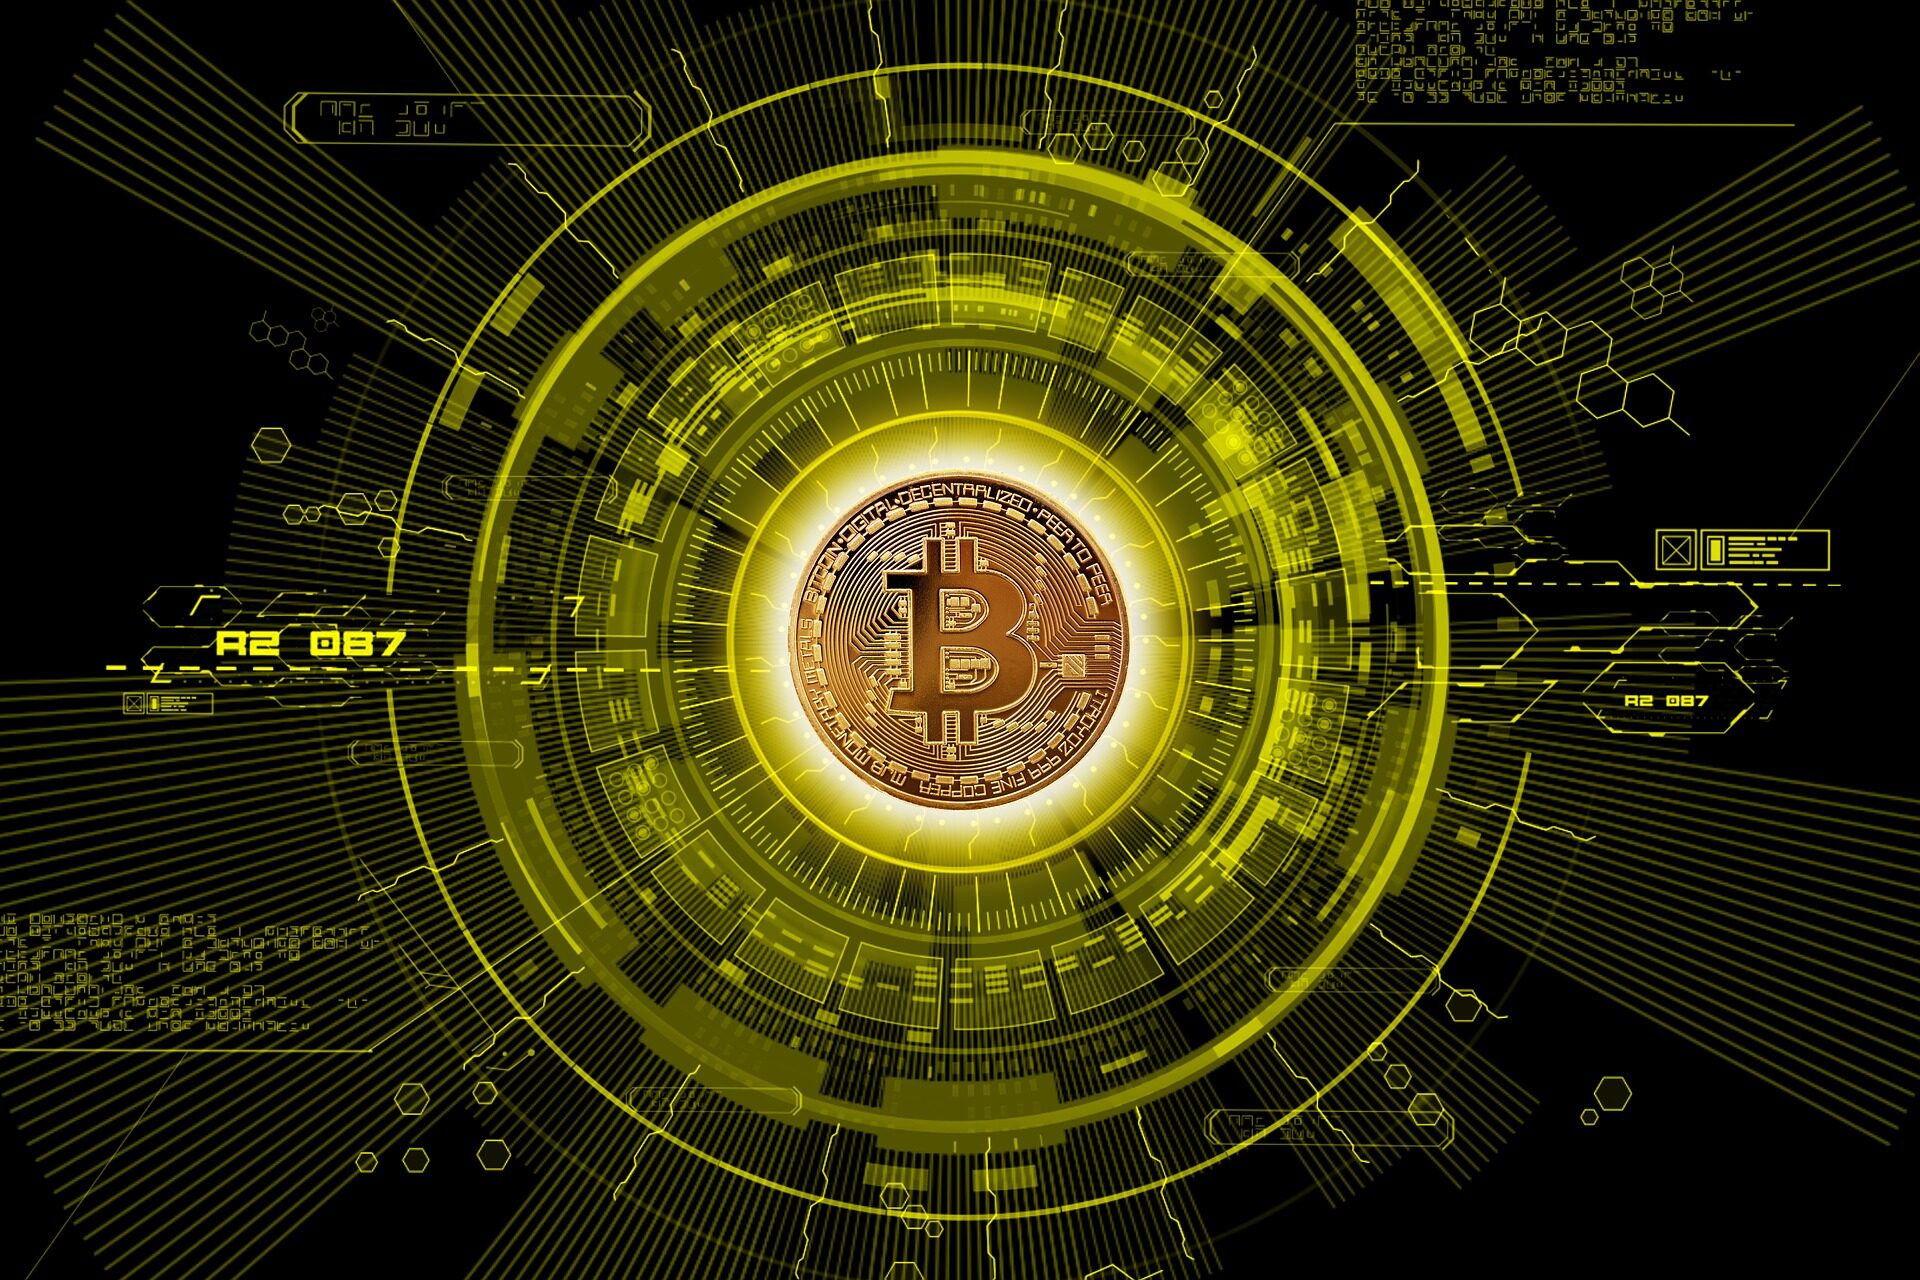 නව දත්ත යෝජනා කරන්නේ 2021 දී Bitcoin හි මිල ගණන් දෙකක් තිබිය හැකි බවයි